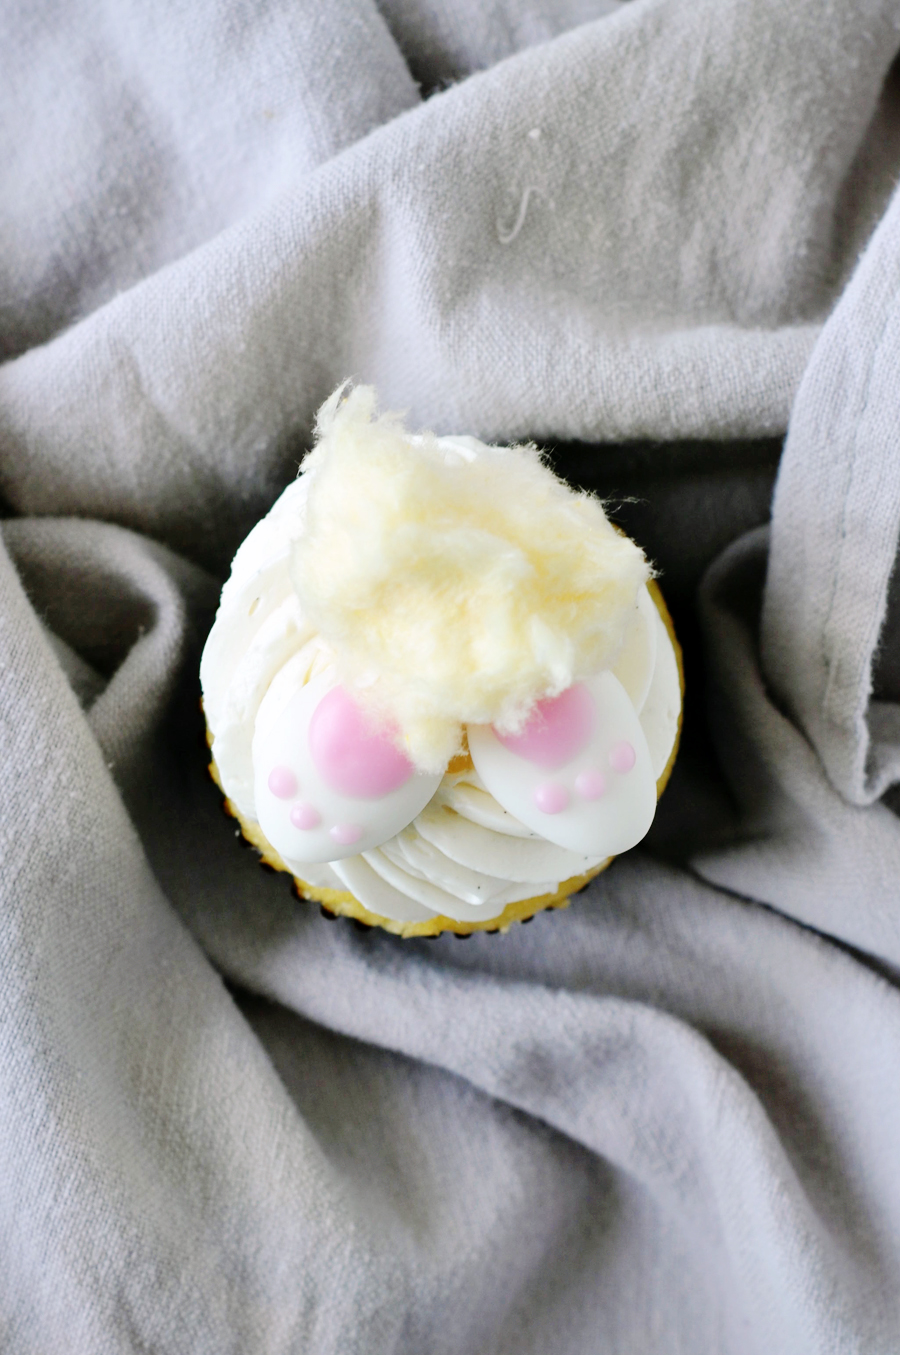 bunny tail cupcakes